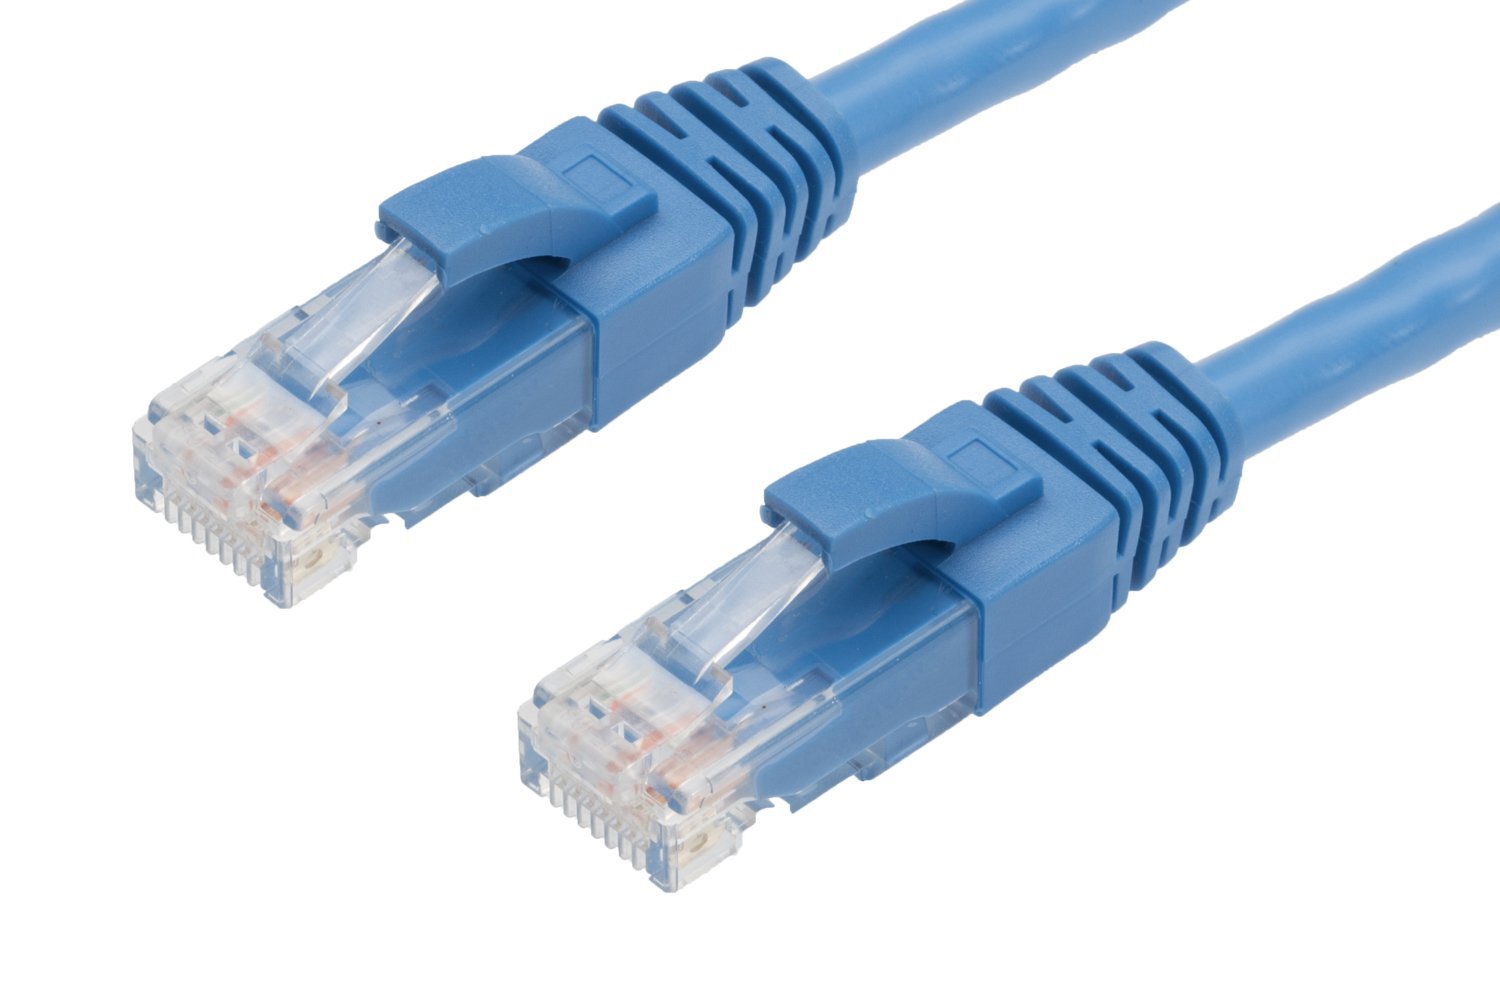 4Cabling 0.5M RJ45 Cat6 Ethernet Cable. Blue